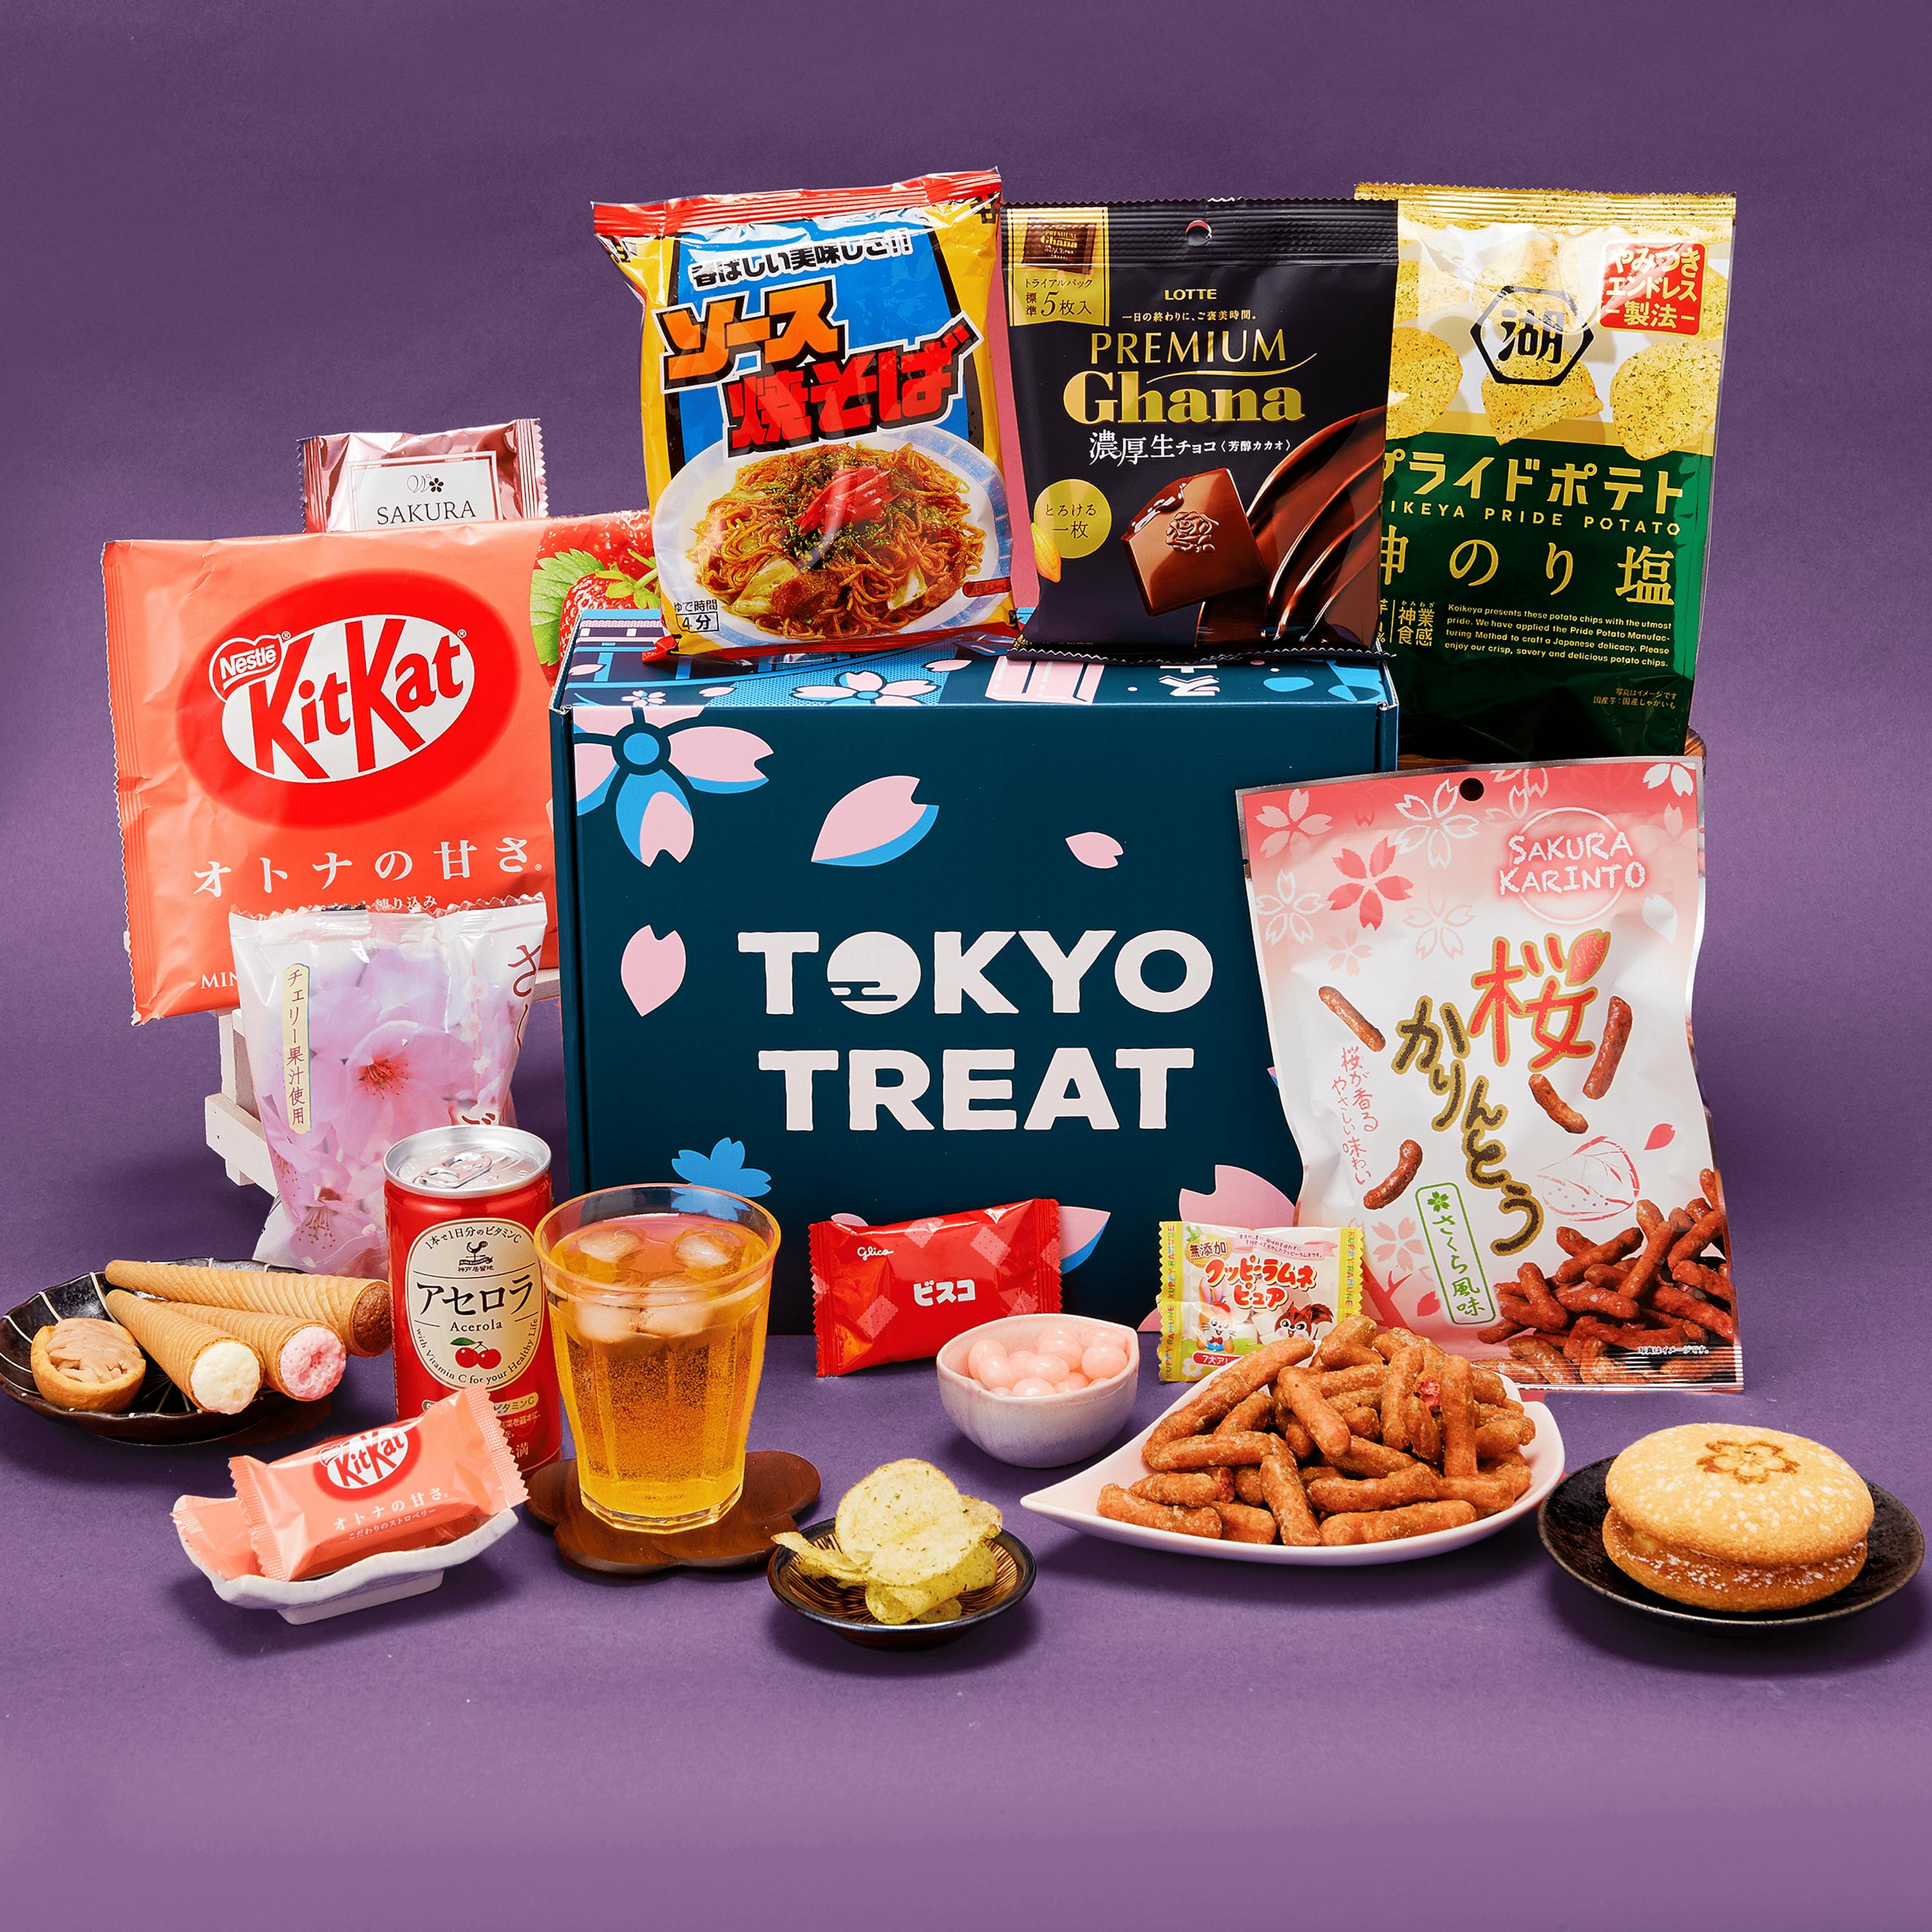 TokyoTreat - Sakura Matsuri Snackfest snack box